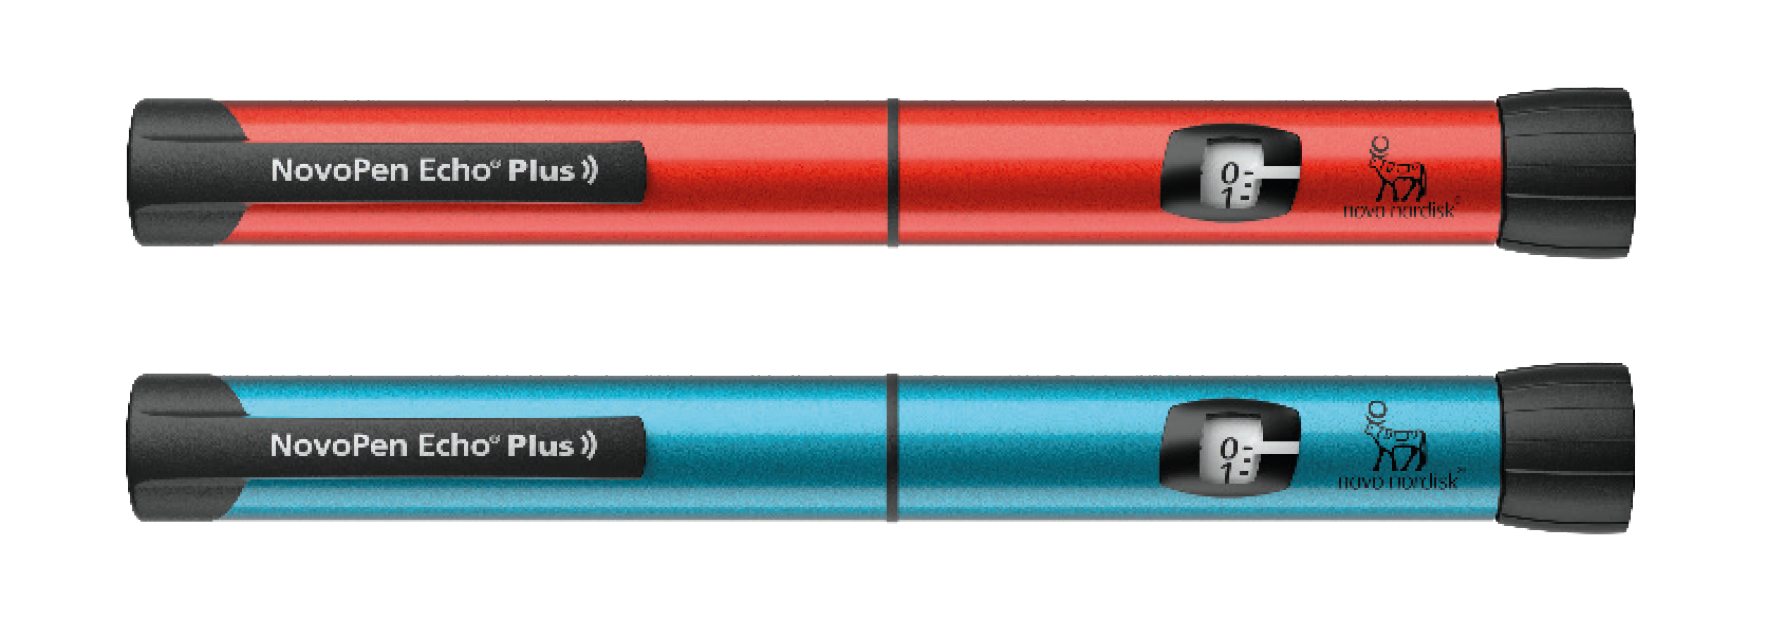 NovoPen Echo Plus Injektionsgerät blau